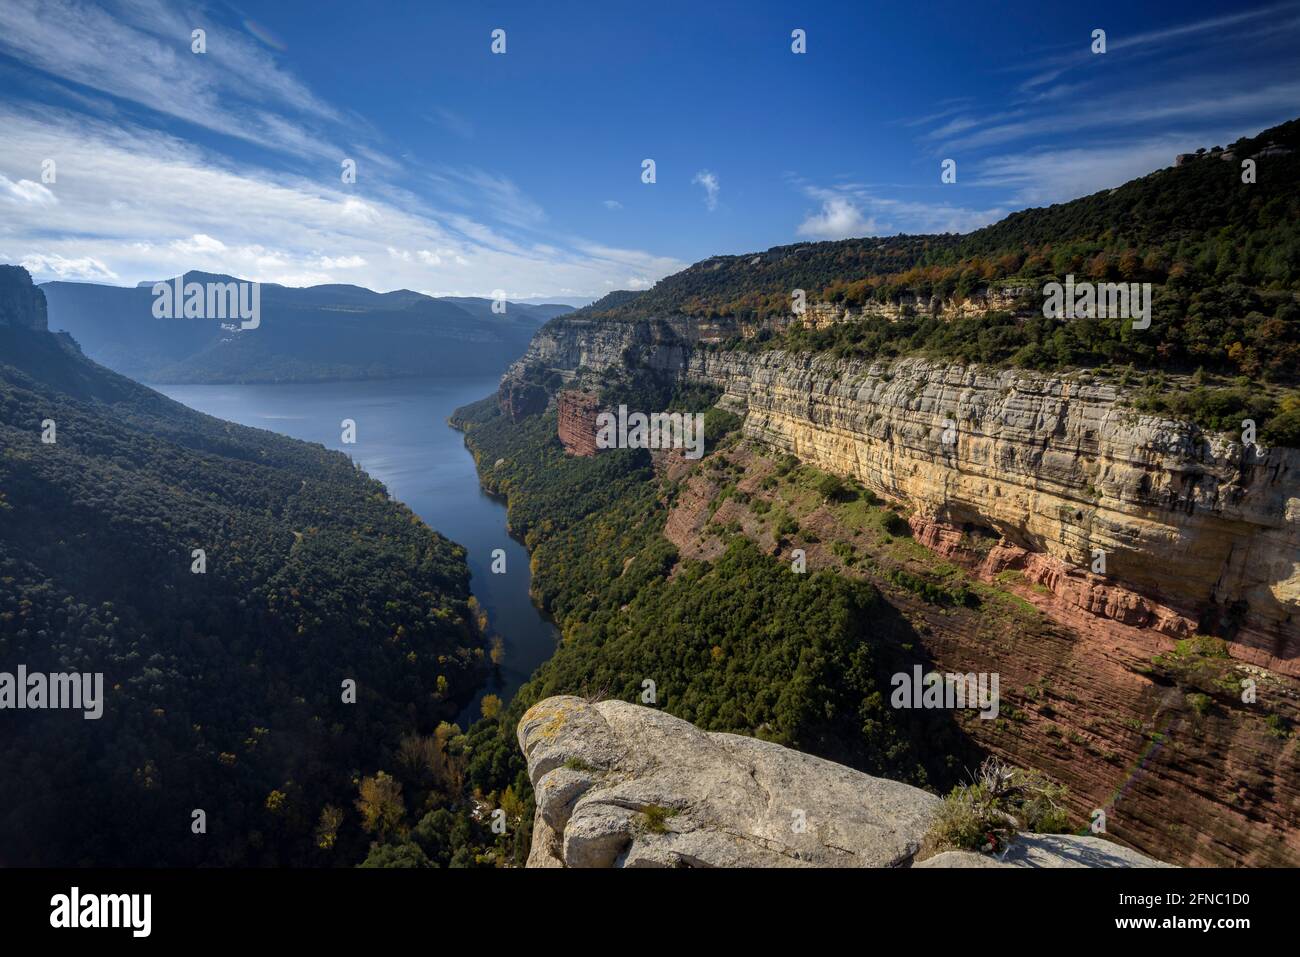 Blick auf den Stausee Sau von der Morro de l'Abella Klippe, in Tavertet (Collsacabra, Katalonien, Spanien) ESP: Vistas del embalse de Sau en Tavertet Stockfoto